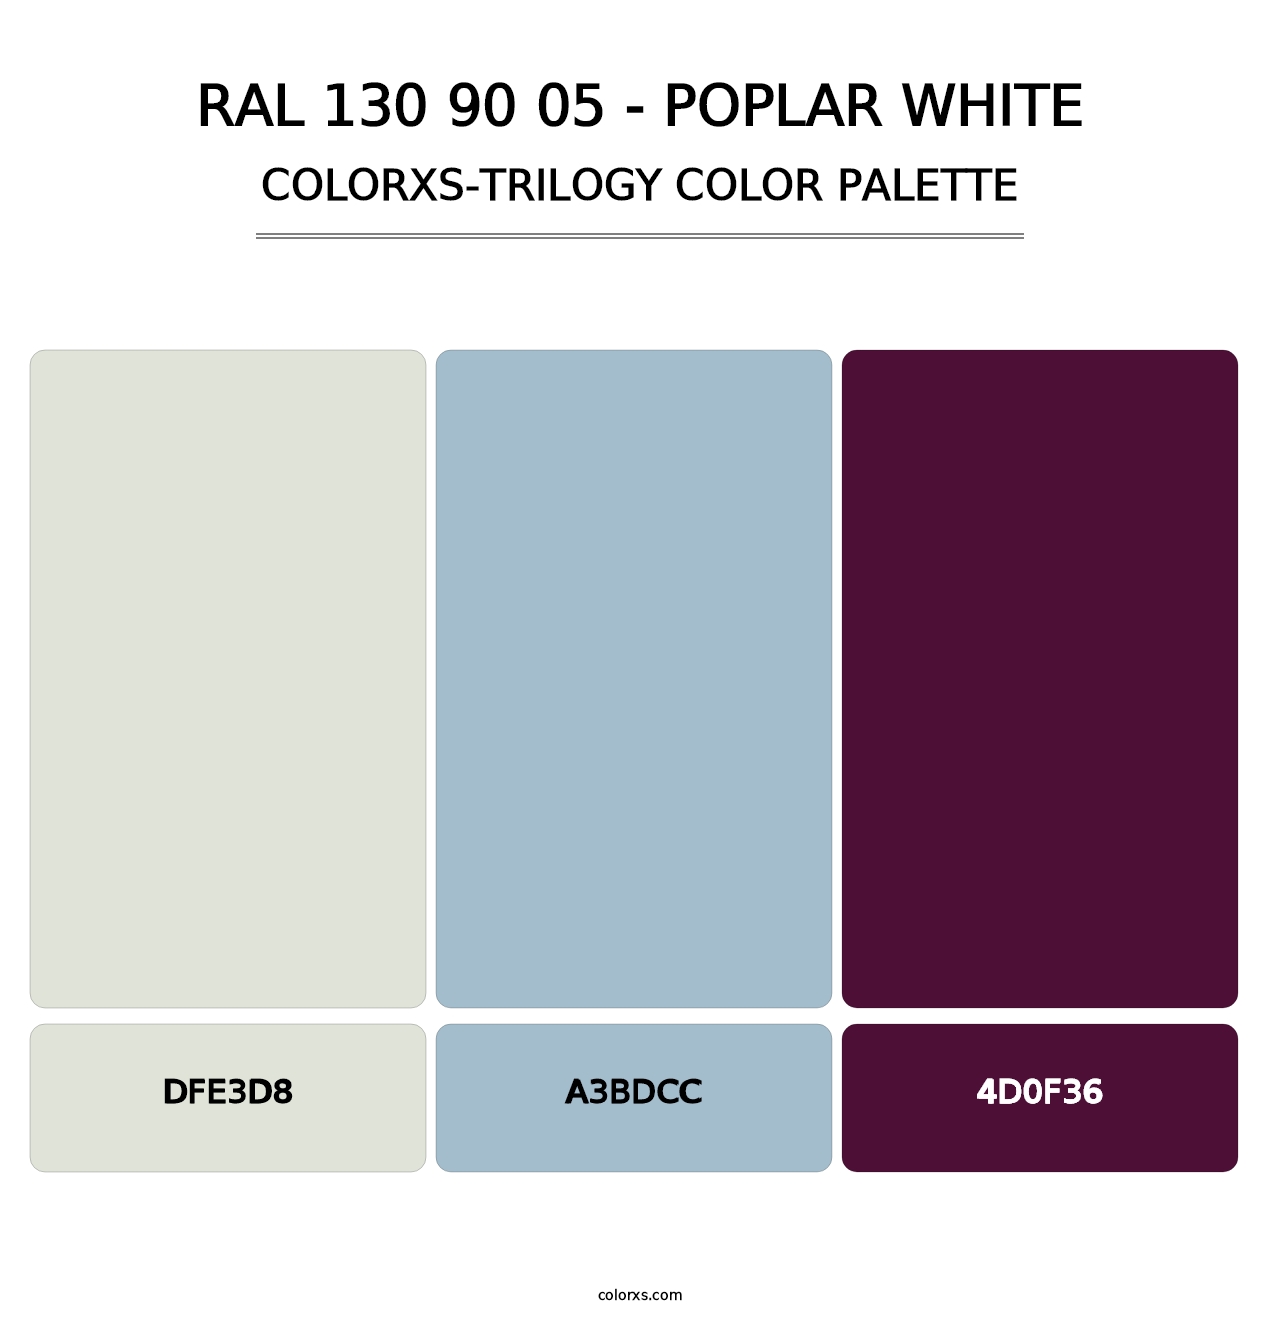 RAL 130 90 05 - Poplar White - Colorxs Trilogy Palette